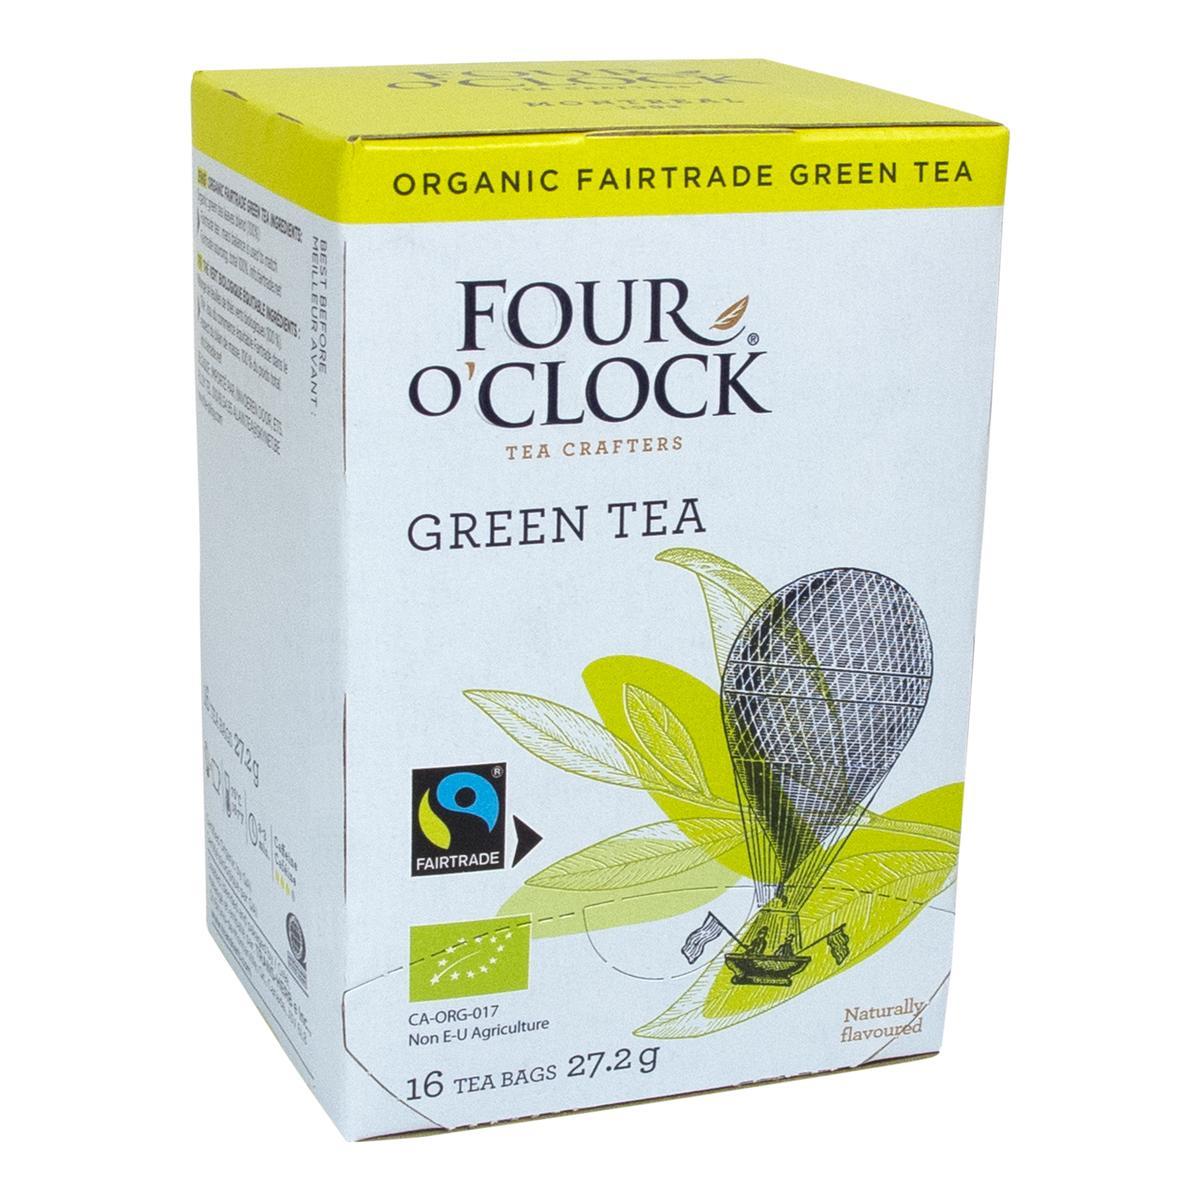 Four O’Clock's Four O'Clock GRÜNER TEE'